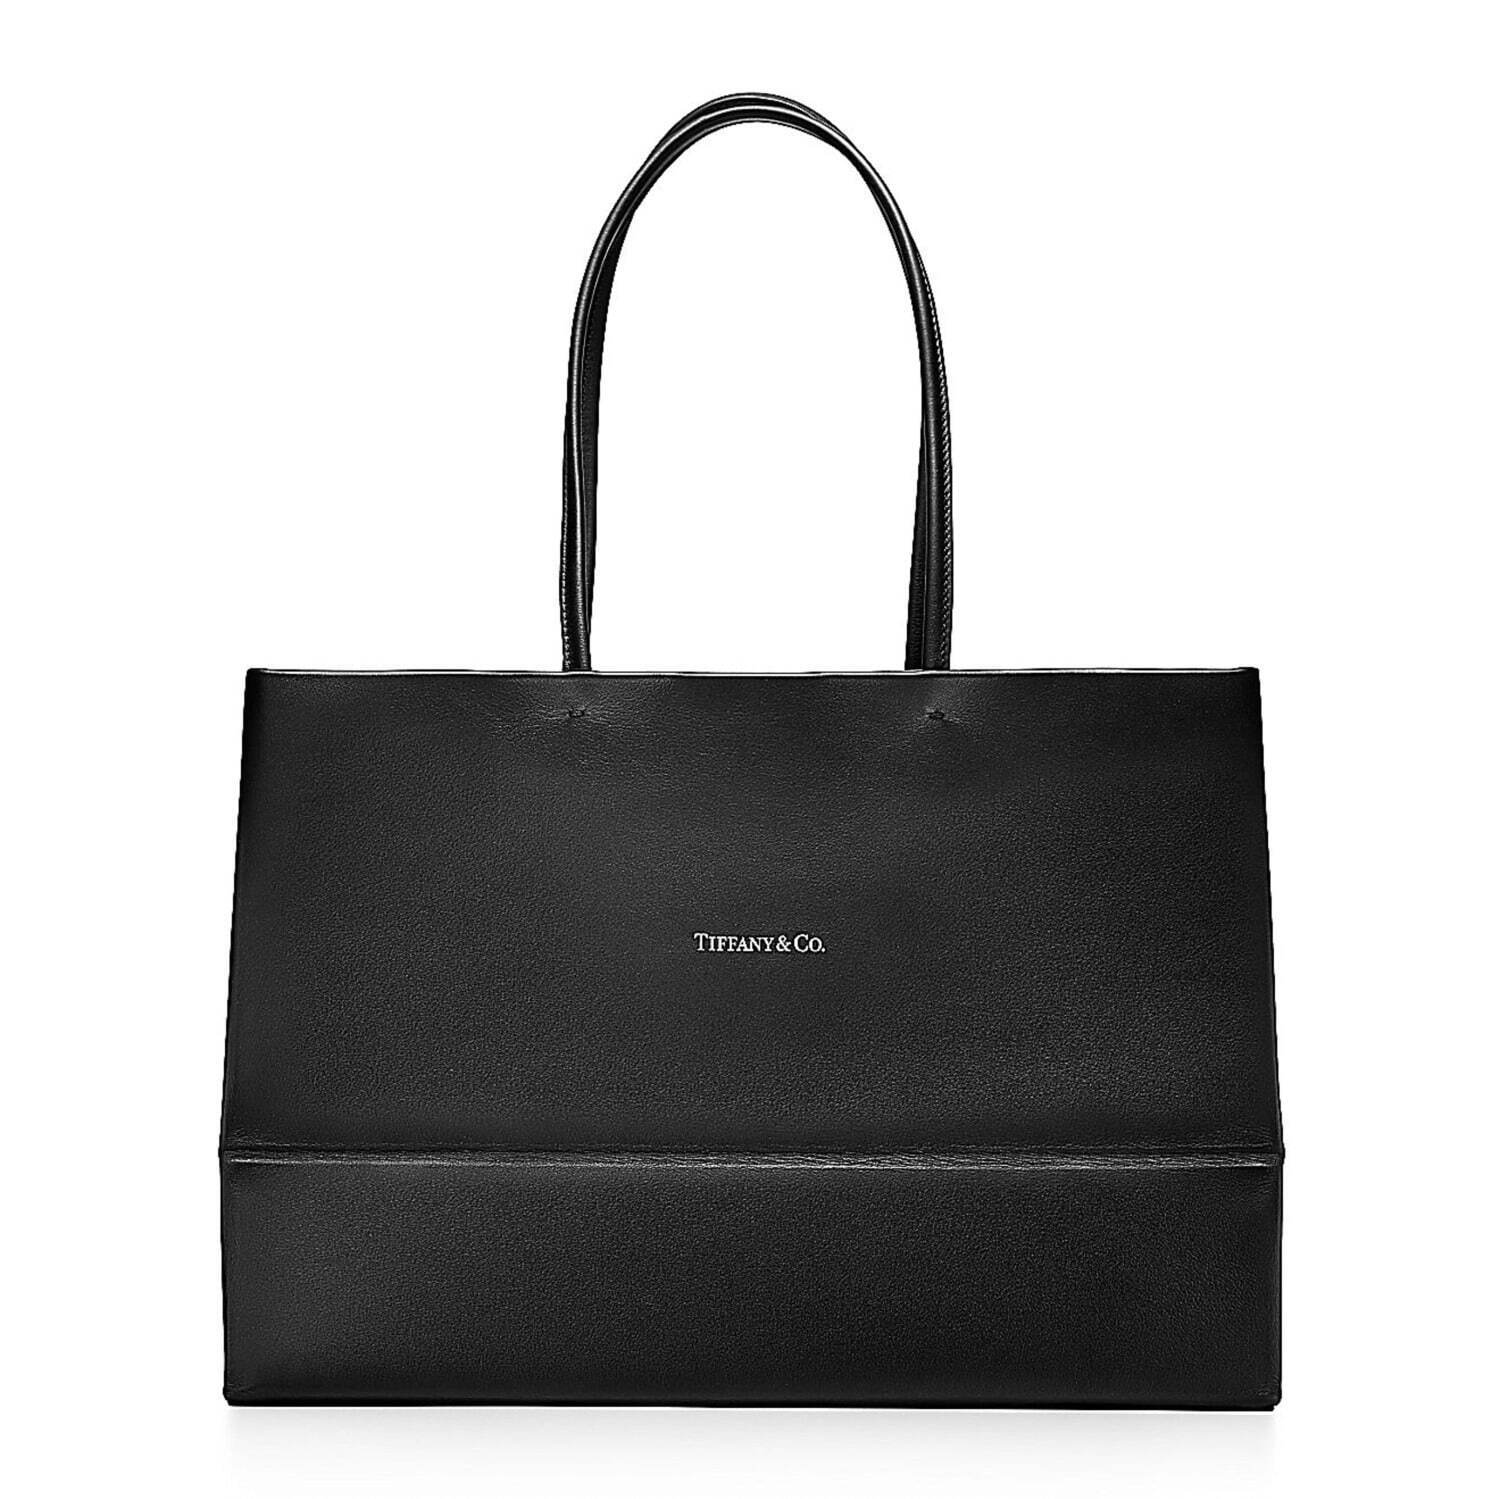 ティファニー“ショッピングバッグ”着想のレザートートバッグ、新色ブラックが登場｜写真3